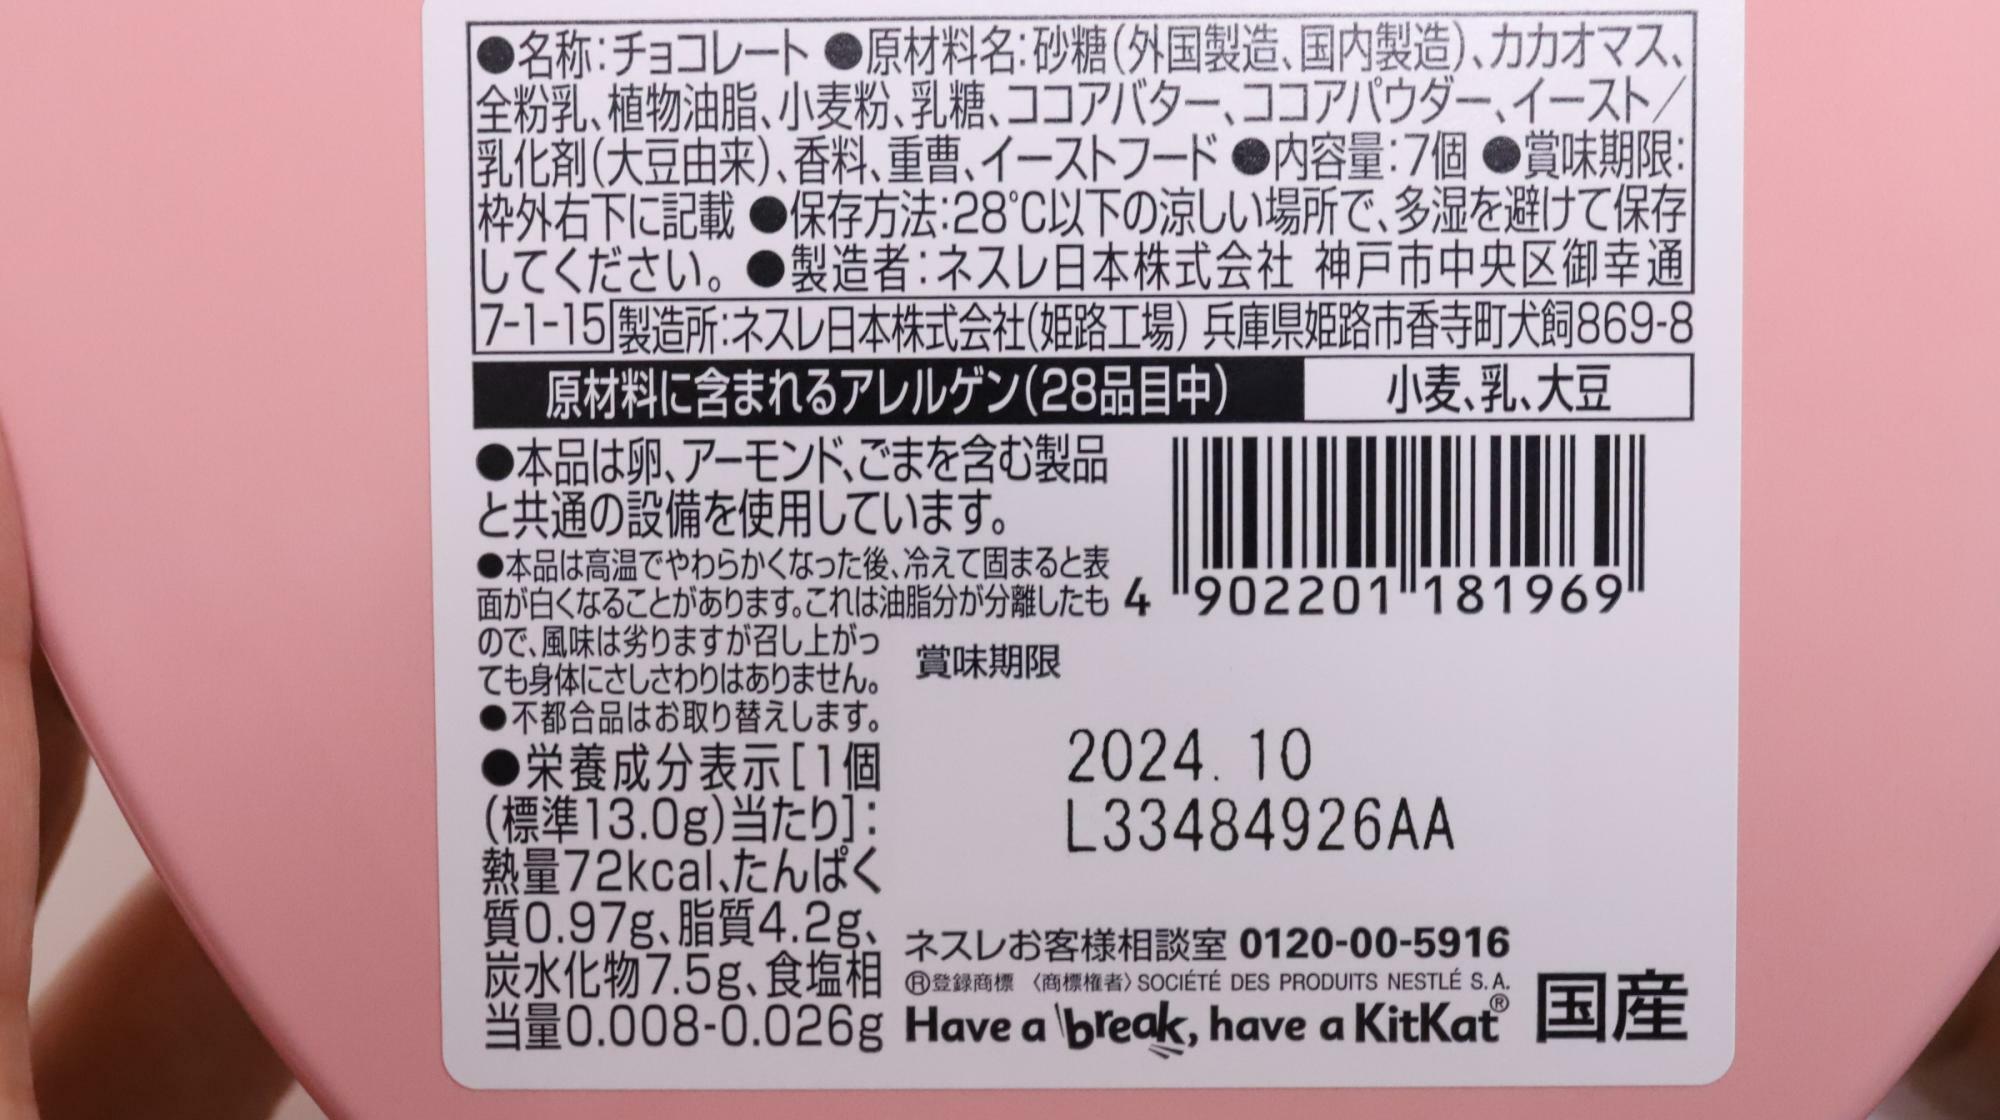 キットカットのハートフルベアー原材料名と栄養成分表示